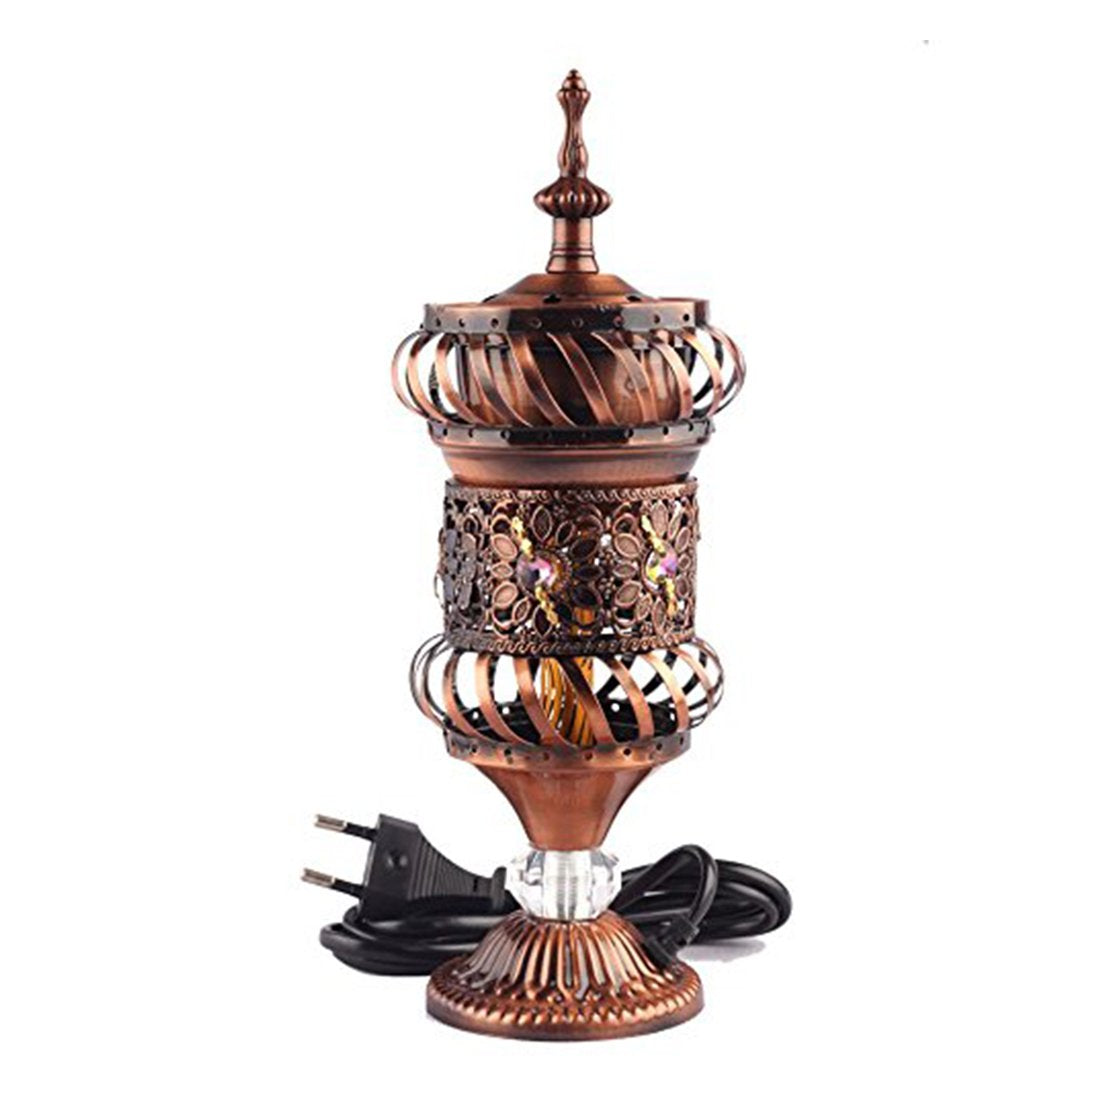 Electrical Bakhoor Burner & 50g Fragrance Paste Iron Incense Holder - Bronze (Oud/BAKHOOR/LOBAAN)